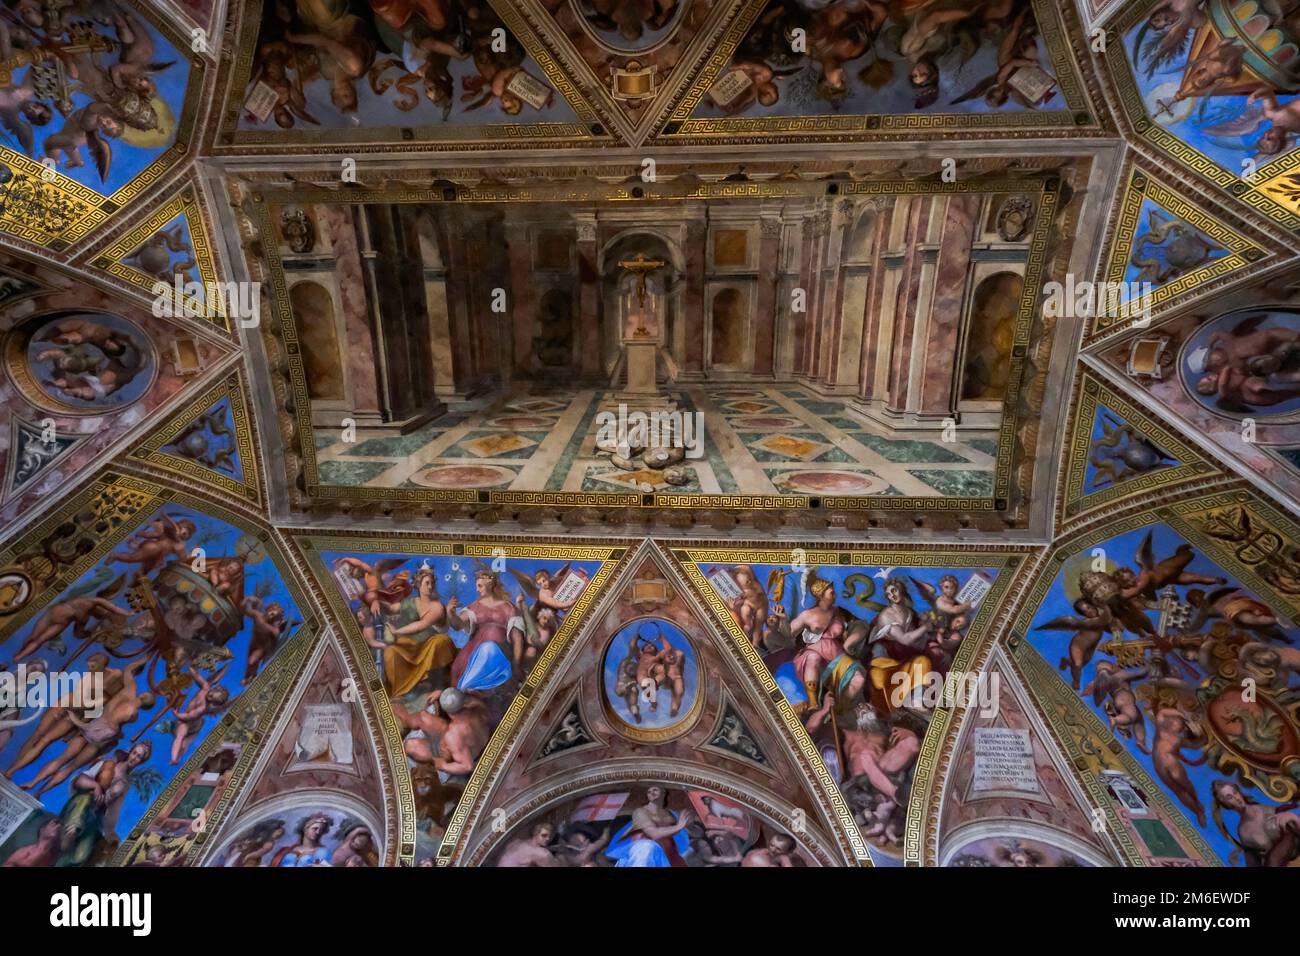 Détails de la belle peinture plafond - Stanze de Raphaël (Chambres de Raphaël) à l'intérieur du Musée du Vatican Banque D'Images